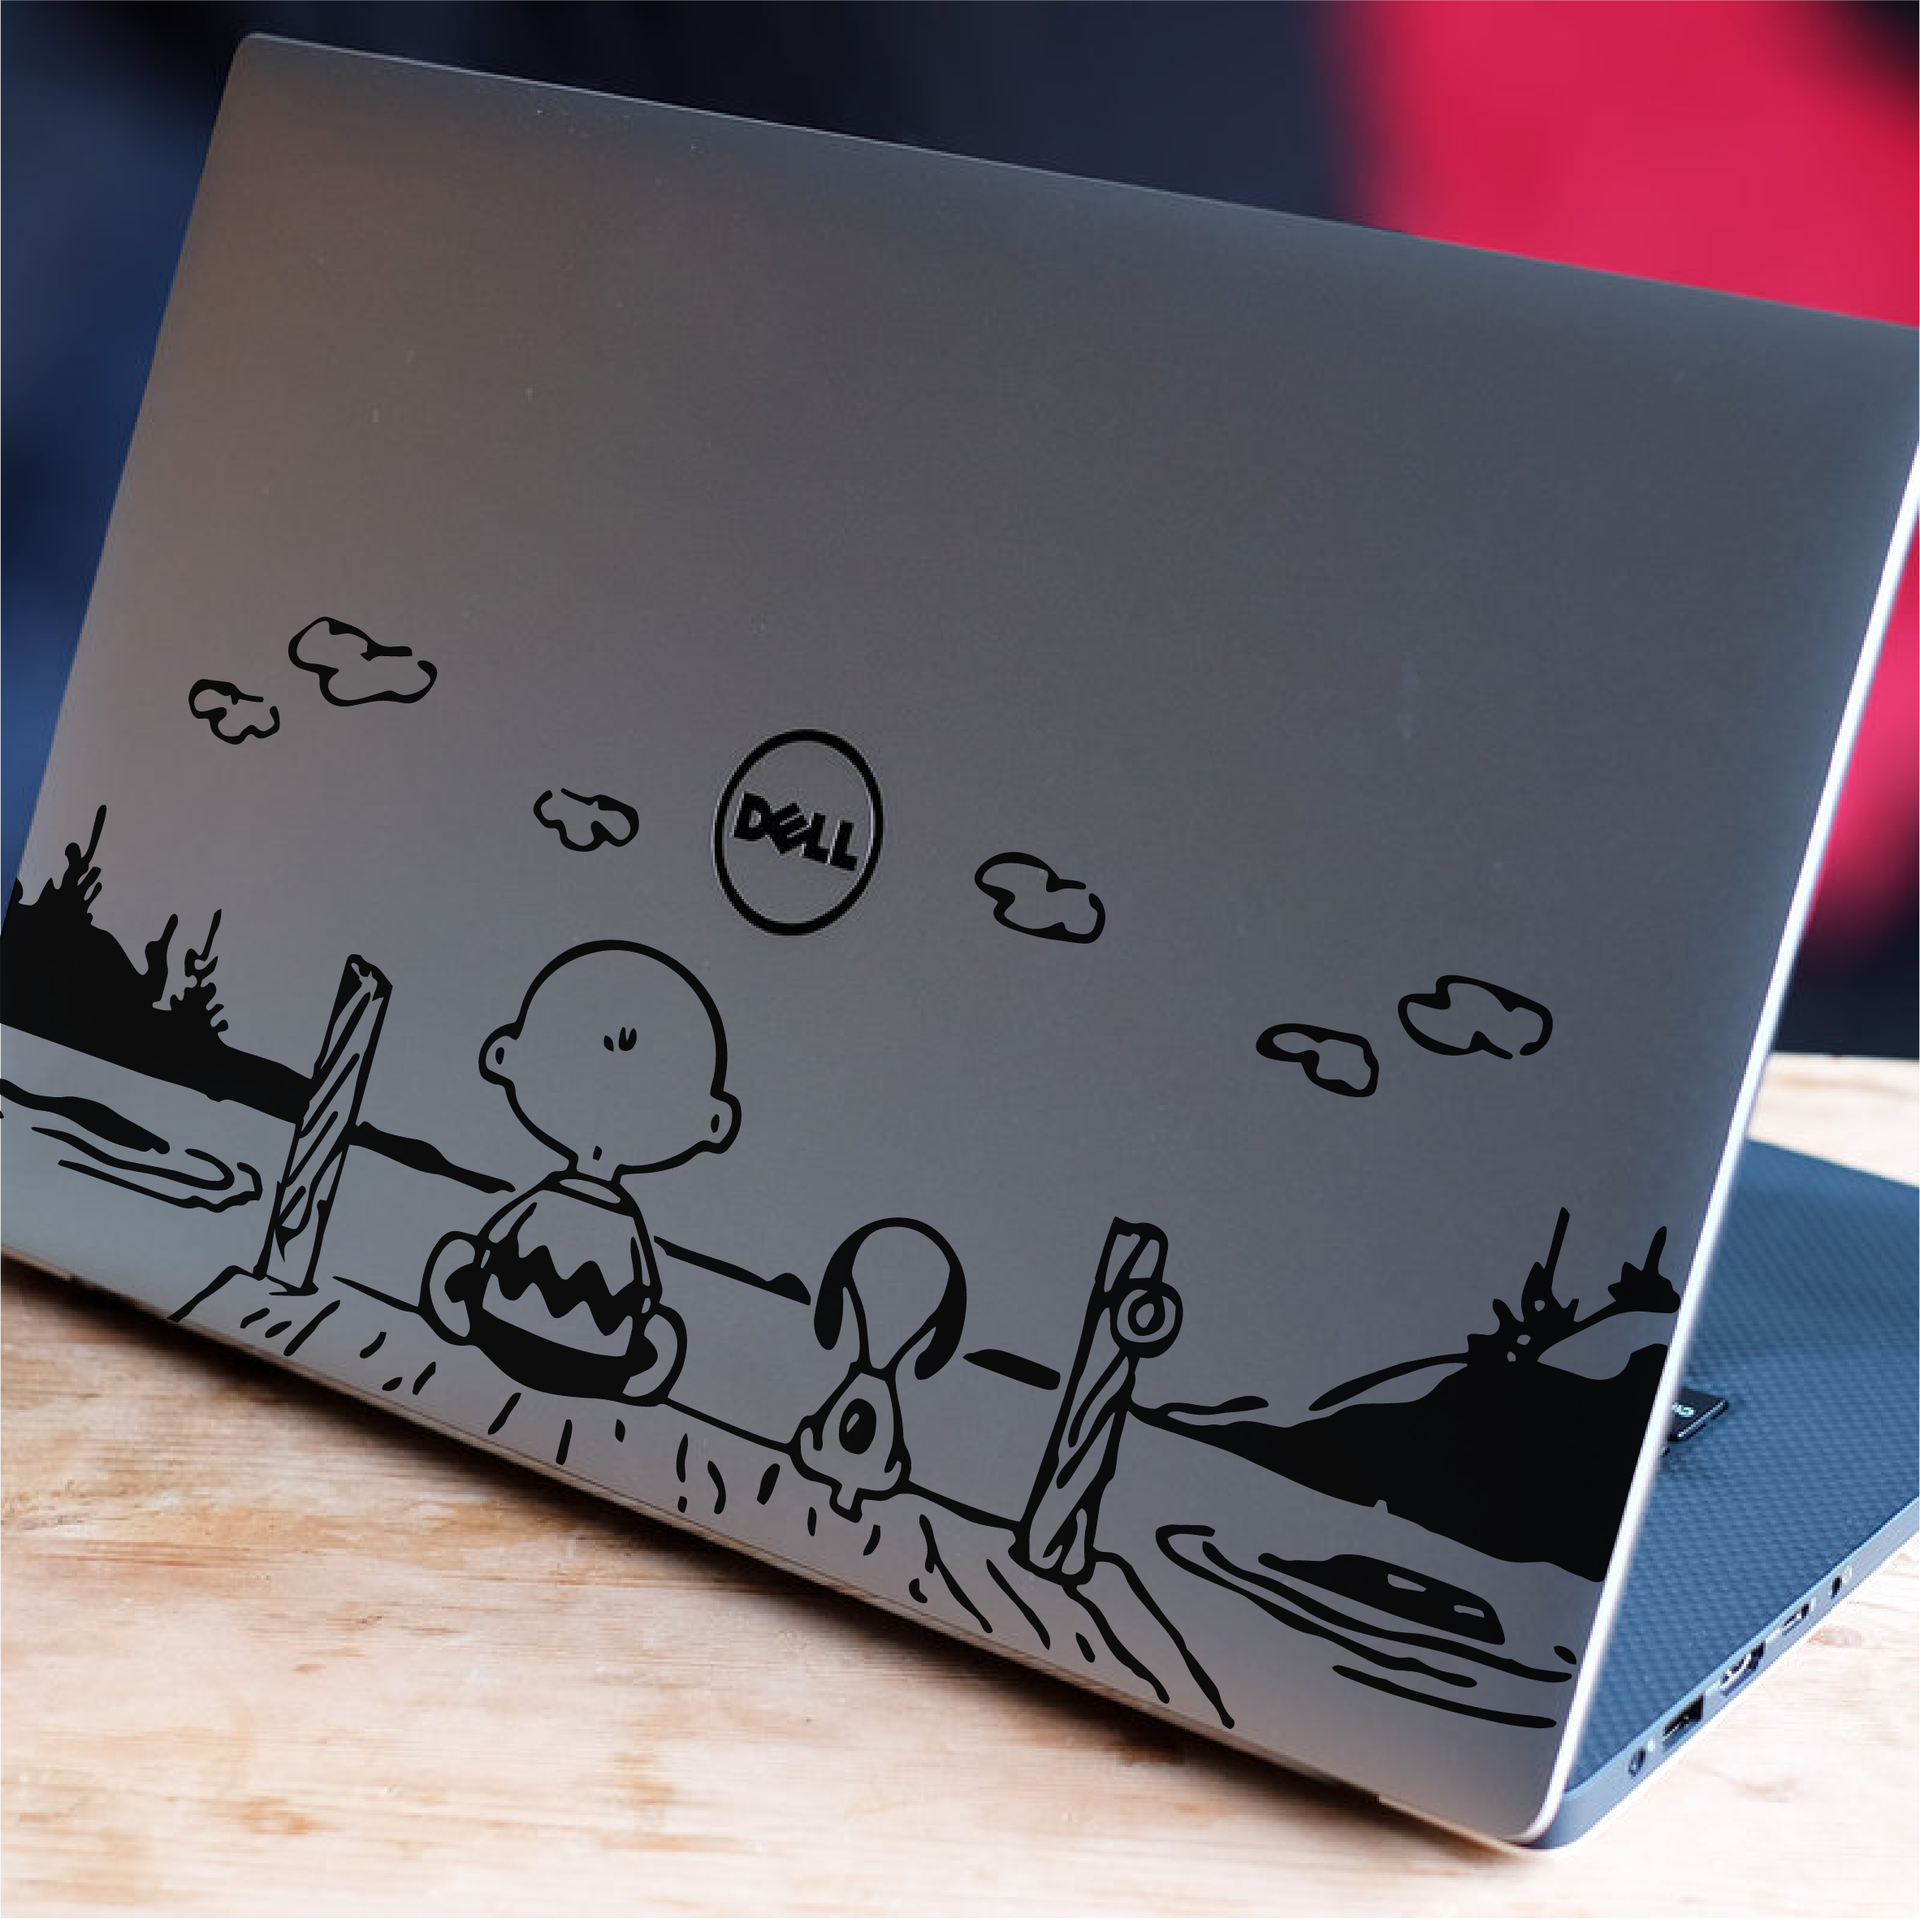 Charlie Brown Peanuts Laptop / Macbook Vinyl Decal Sticker